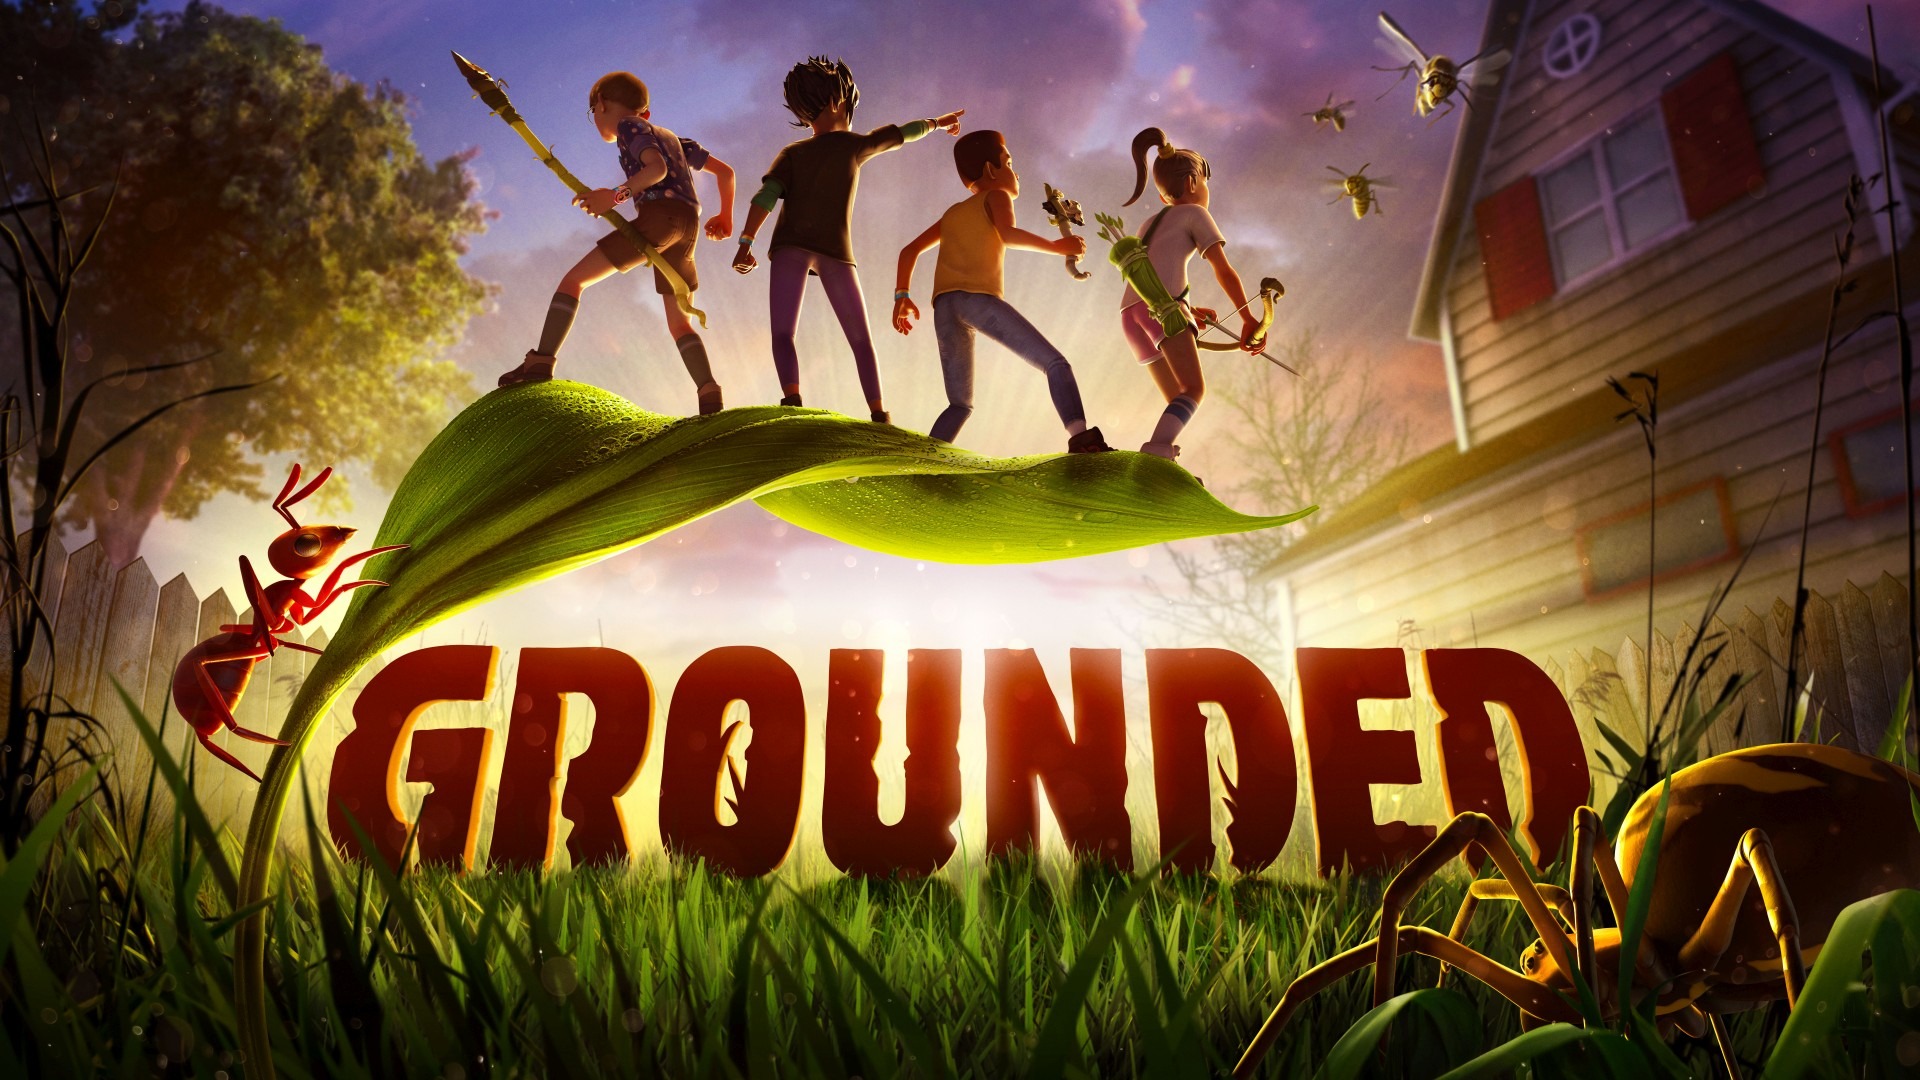 Xbox Game Pass: due nuovi giochi disponibili da oggi, incluso Grounded 1.0 |  Xbox Uno